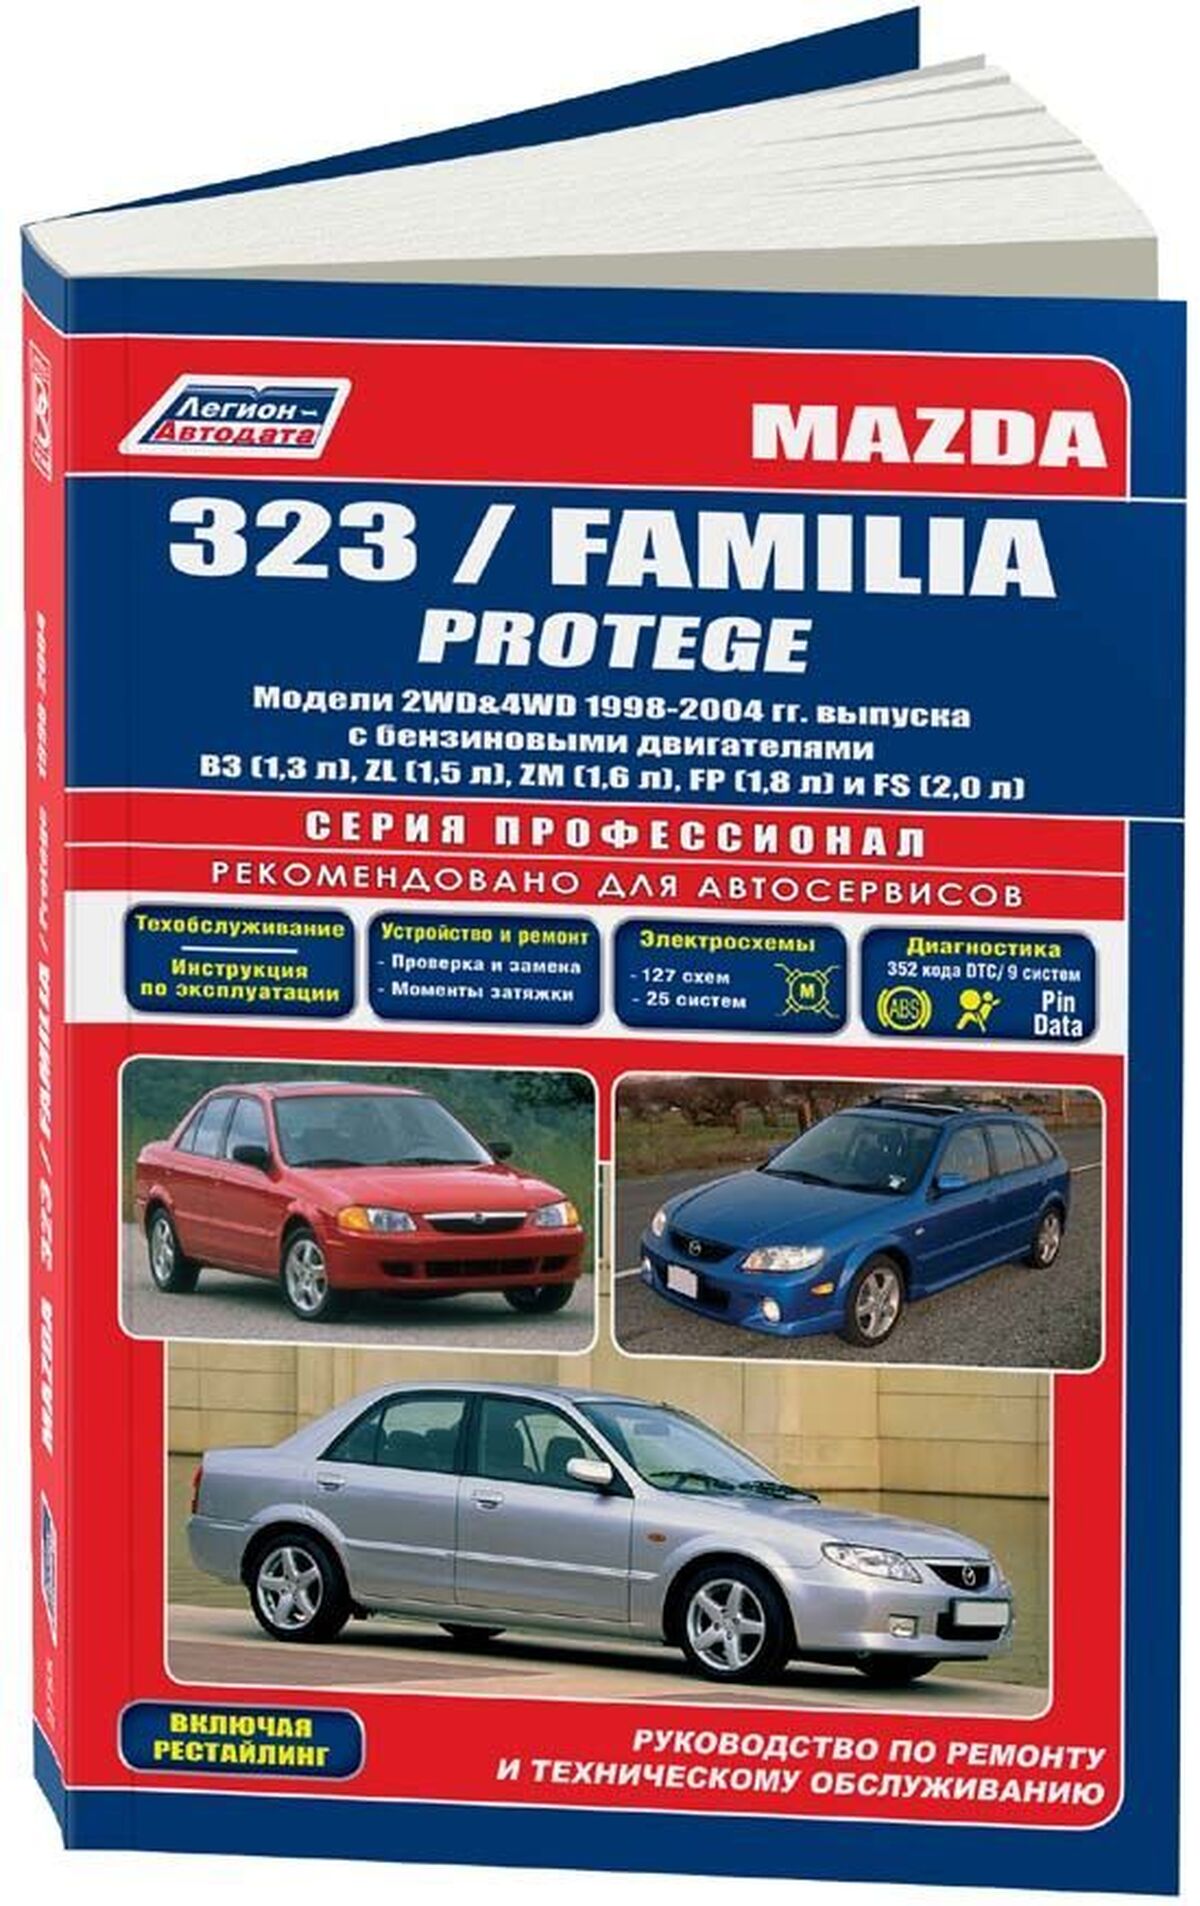 Книга: MAZDA 323 / FAMILIA / PROTEGE (б) 1998-2004 г.в., рем., экспл., то | Легион-Aвтодата